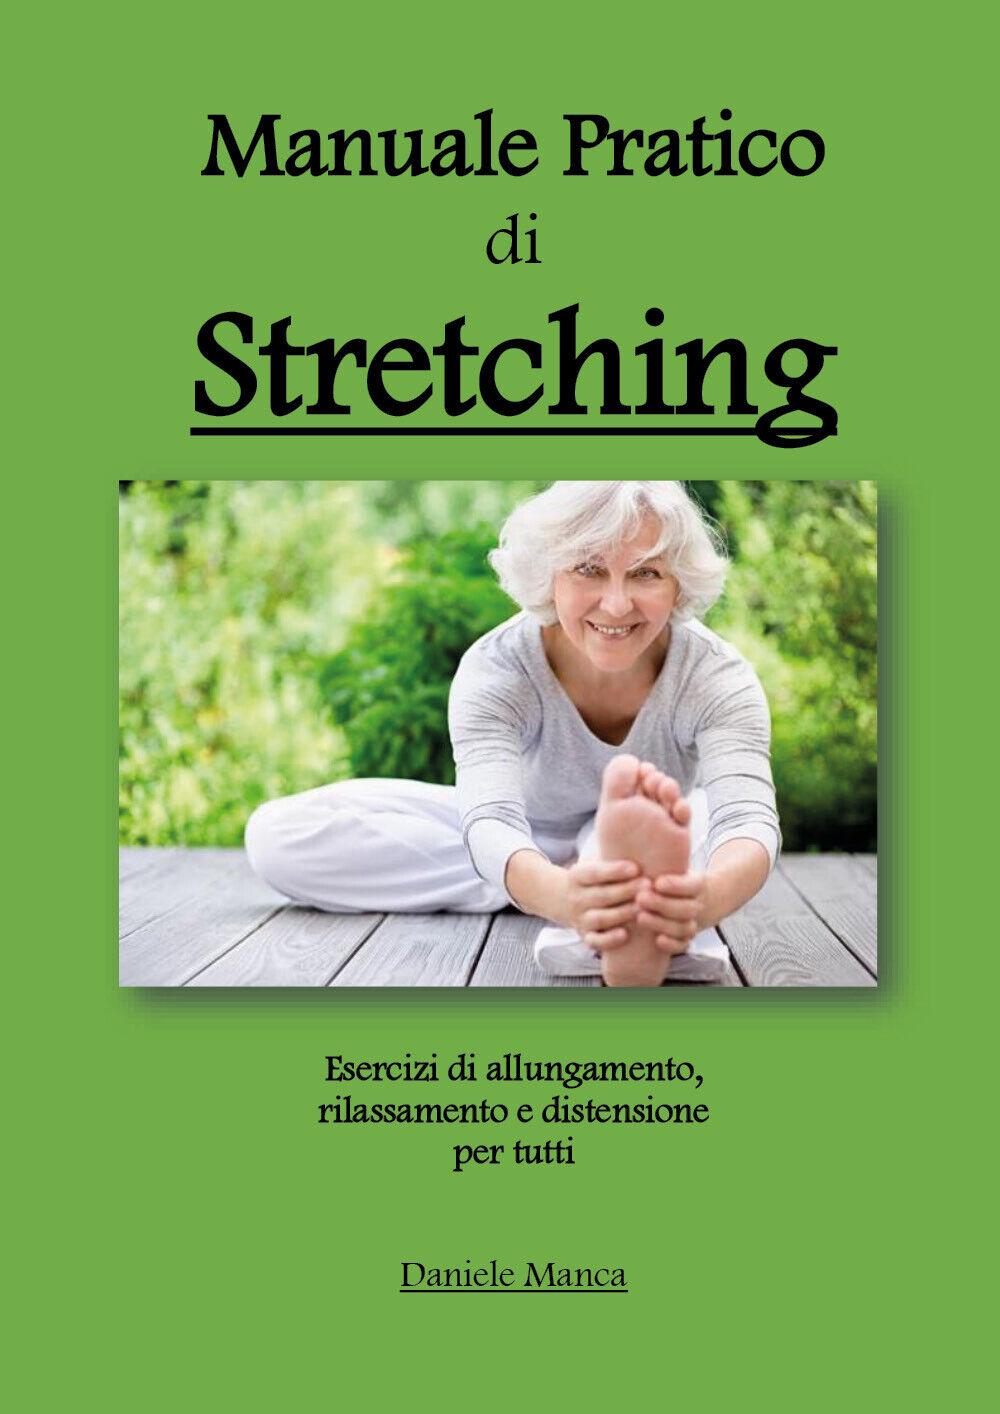 Manuale pratico di Stretching di Daniele Manca,  2020,  Youcanprint